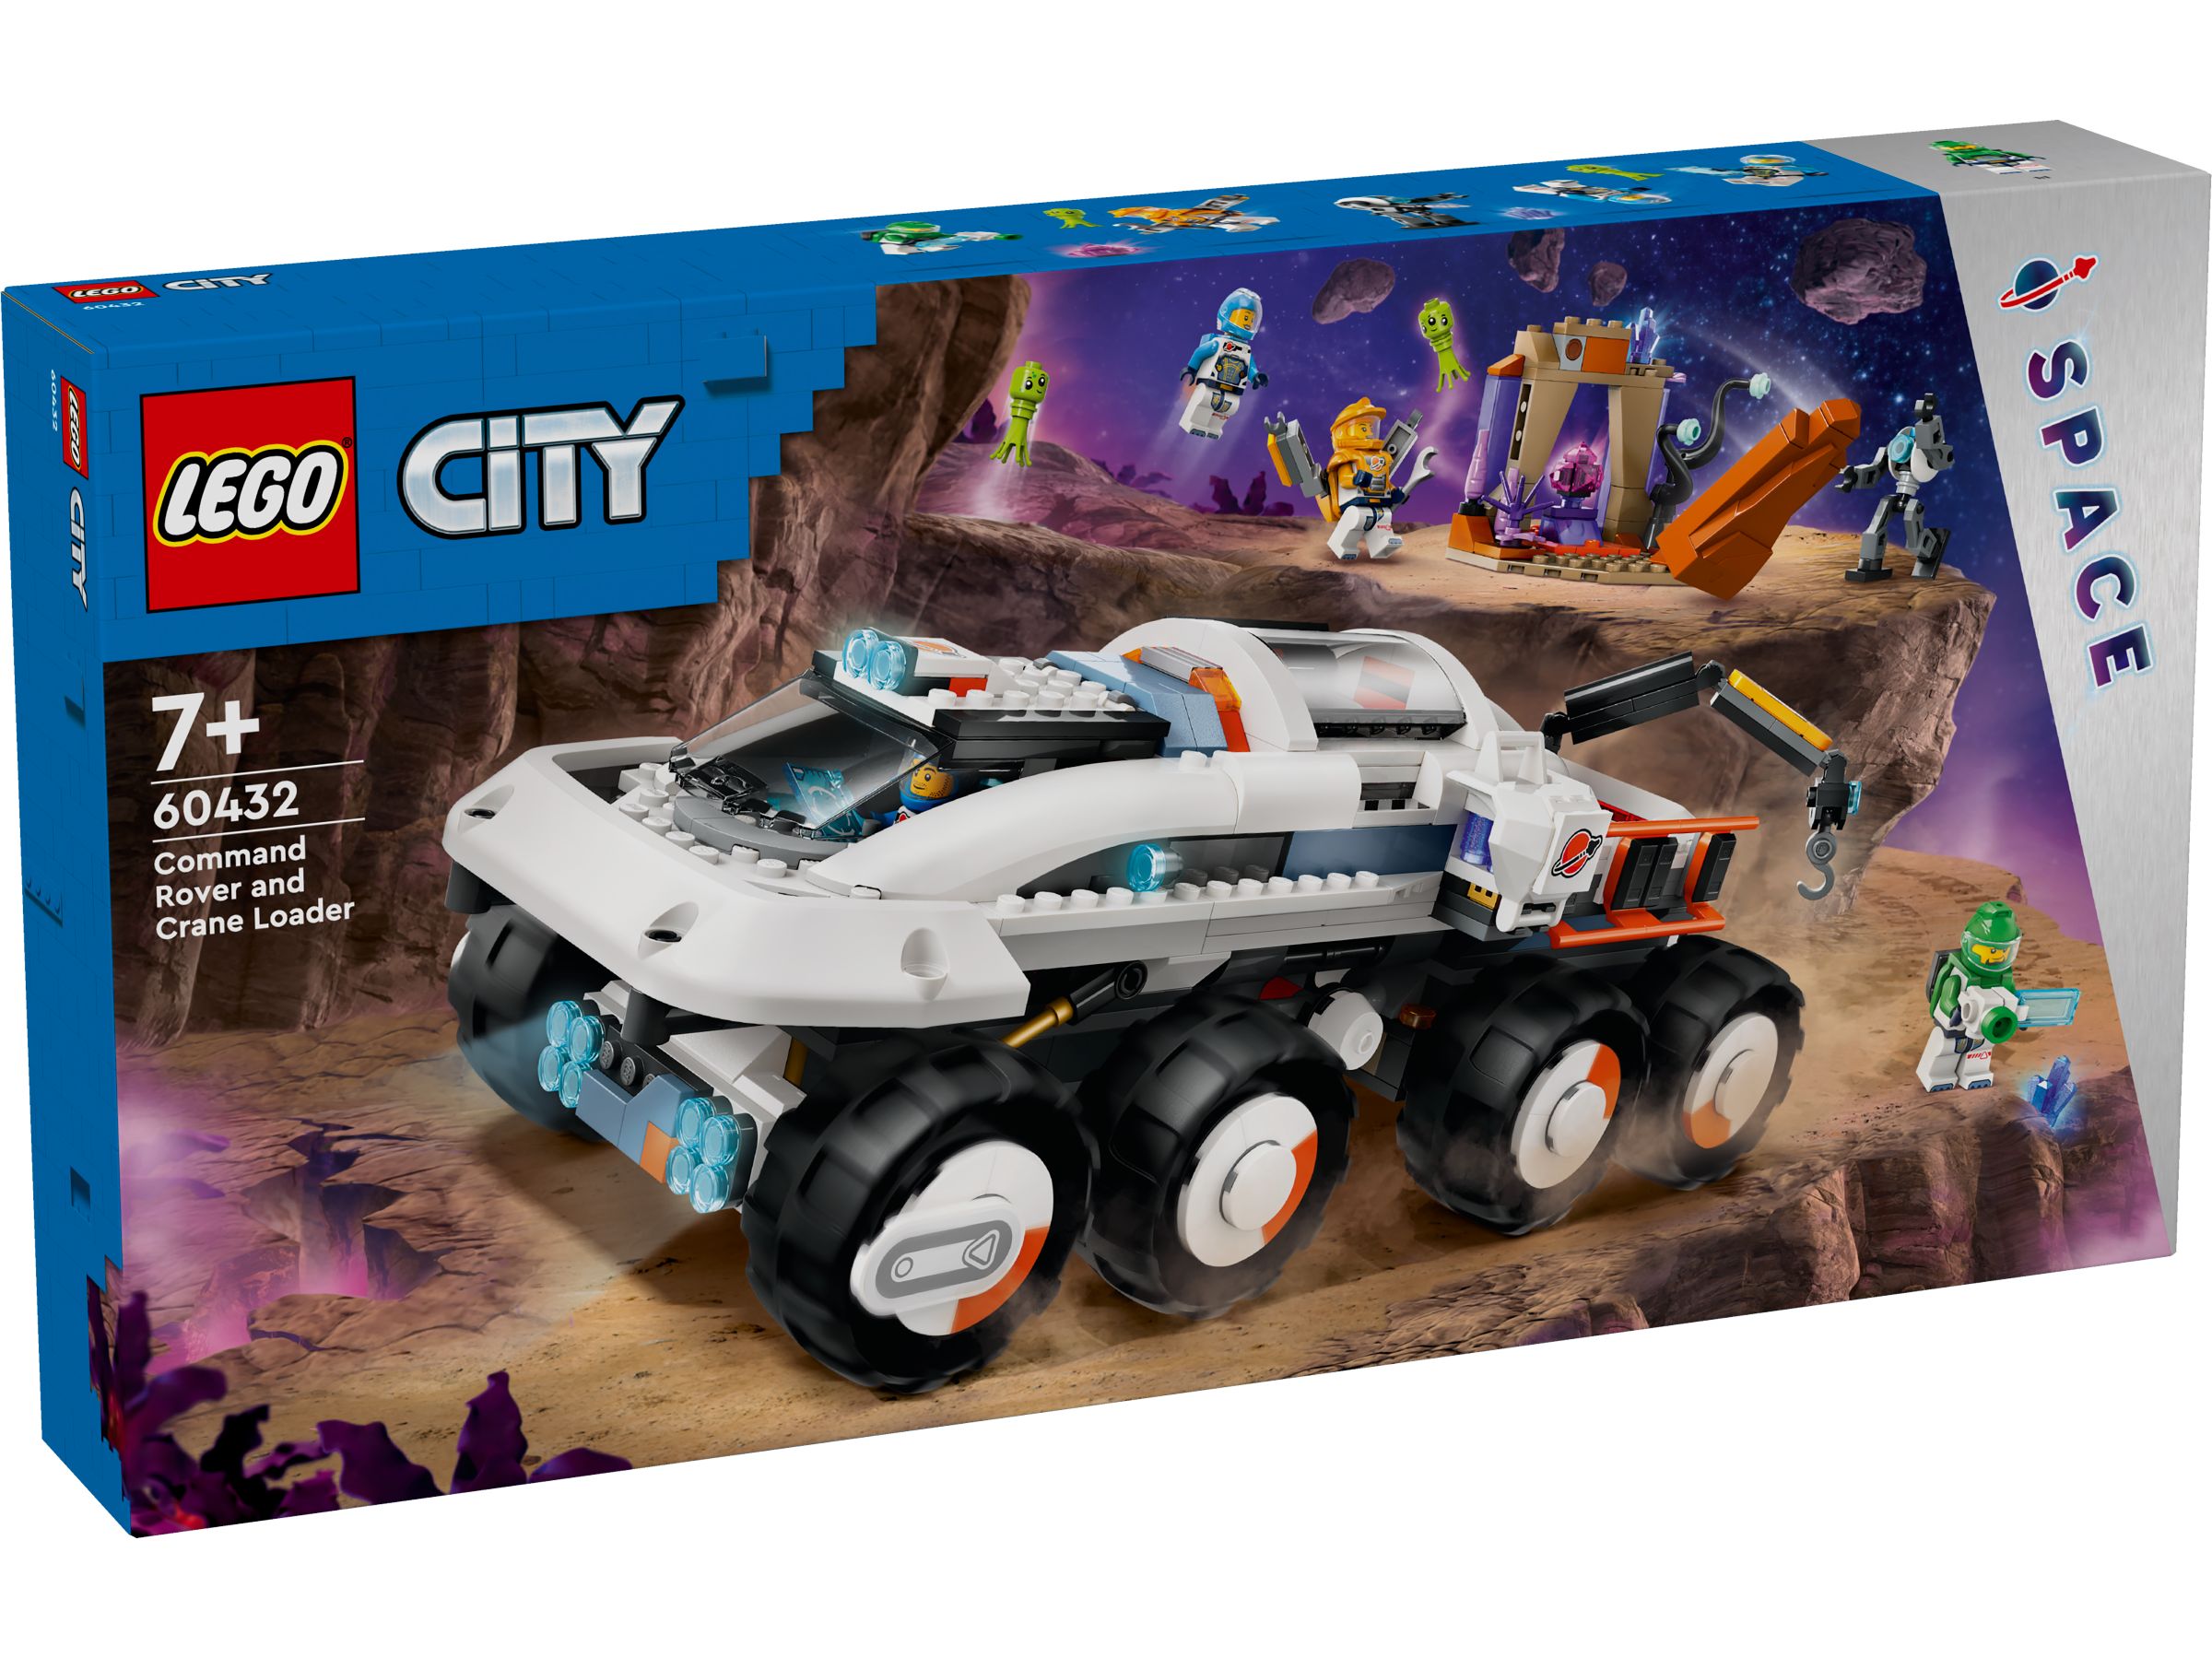 LEGO City 60432 Kommando-Rover mit Ladekran LEGO_60432_box1_v29.jpg